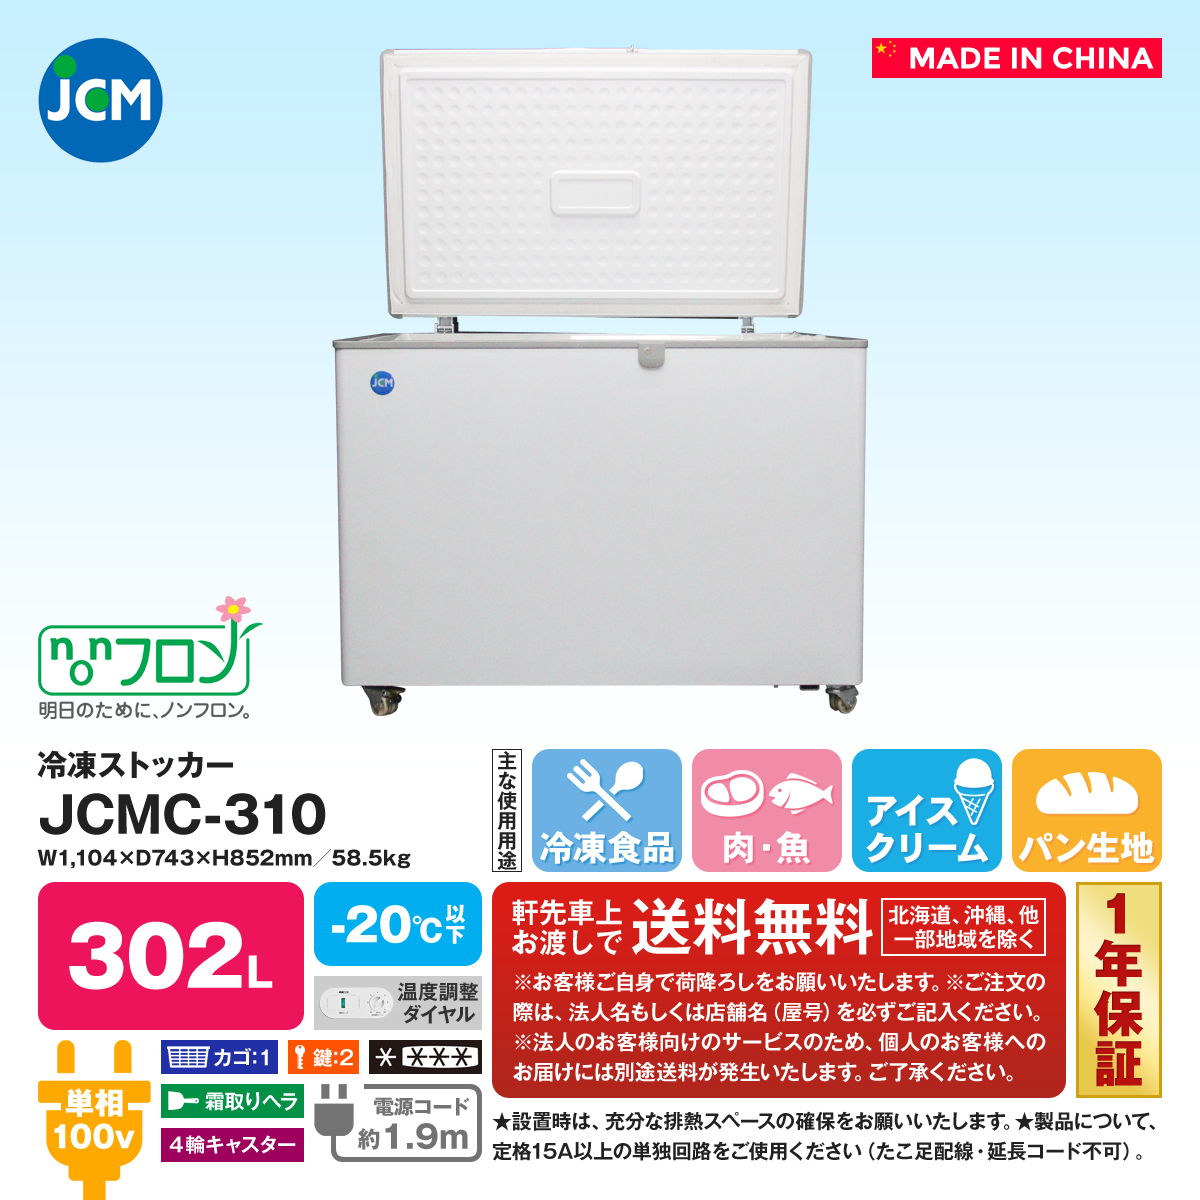 冷凍庫 冷凍ストッカー 266L JCMC-266 送料無料 業務用 JCM 新品 キャッシュレス - 1